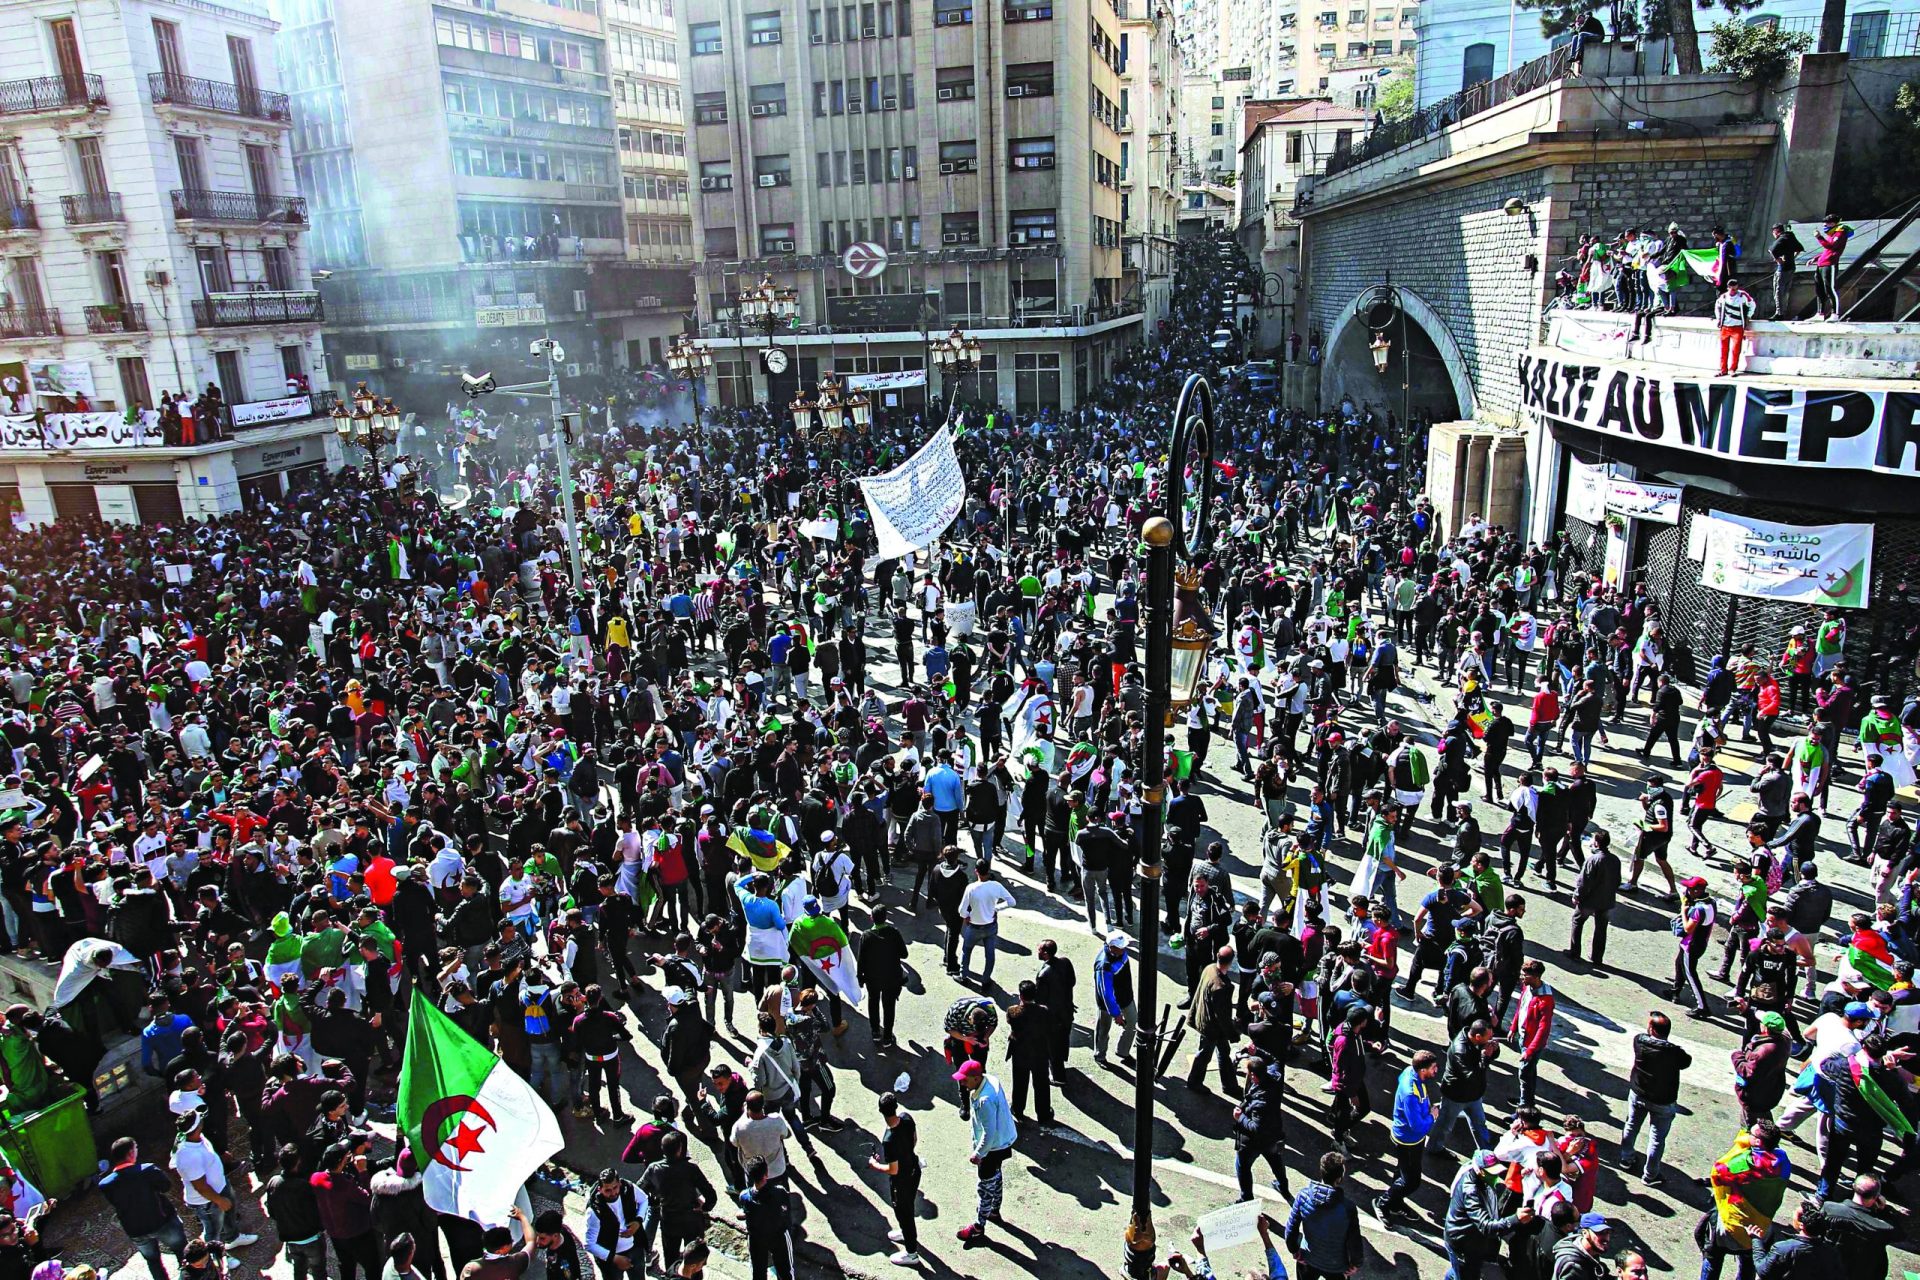 Revolução. Vem aí uma segunda Primavera Árabe?